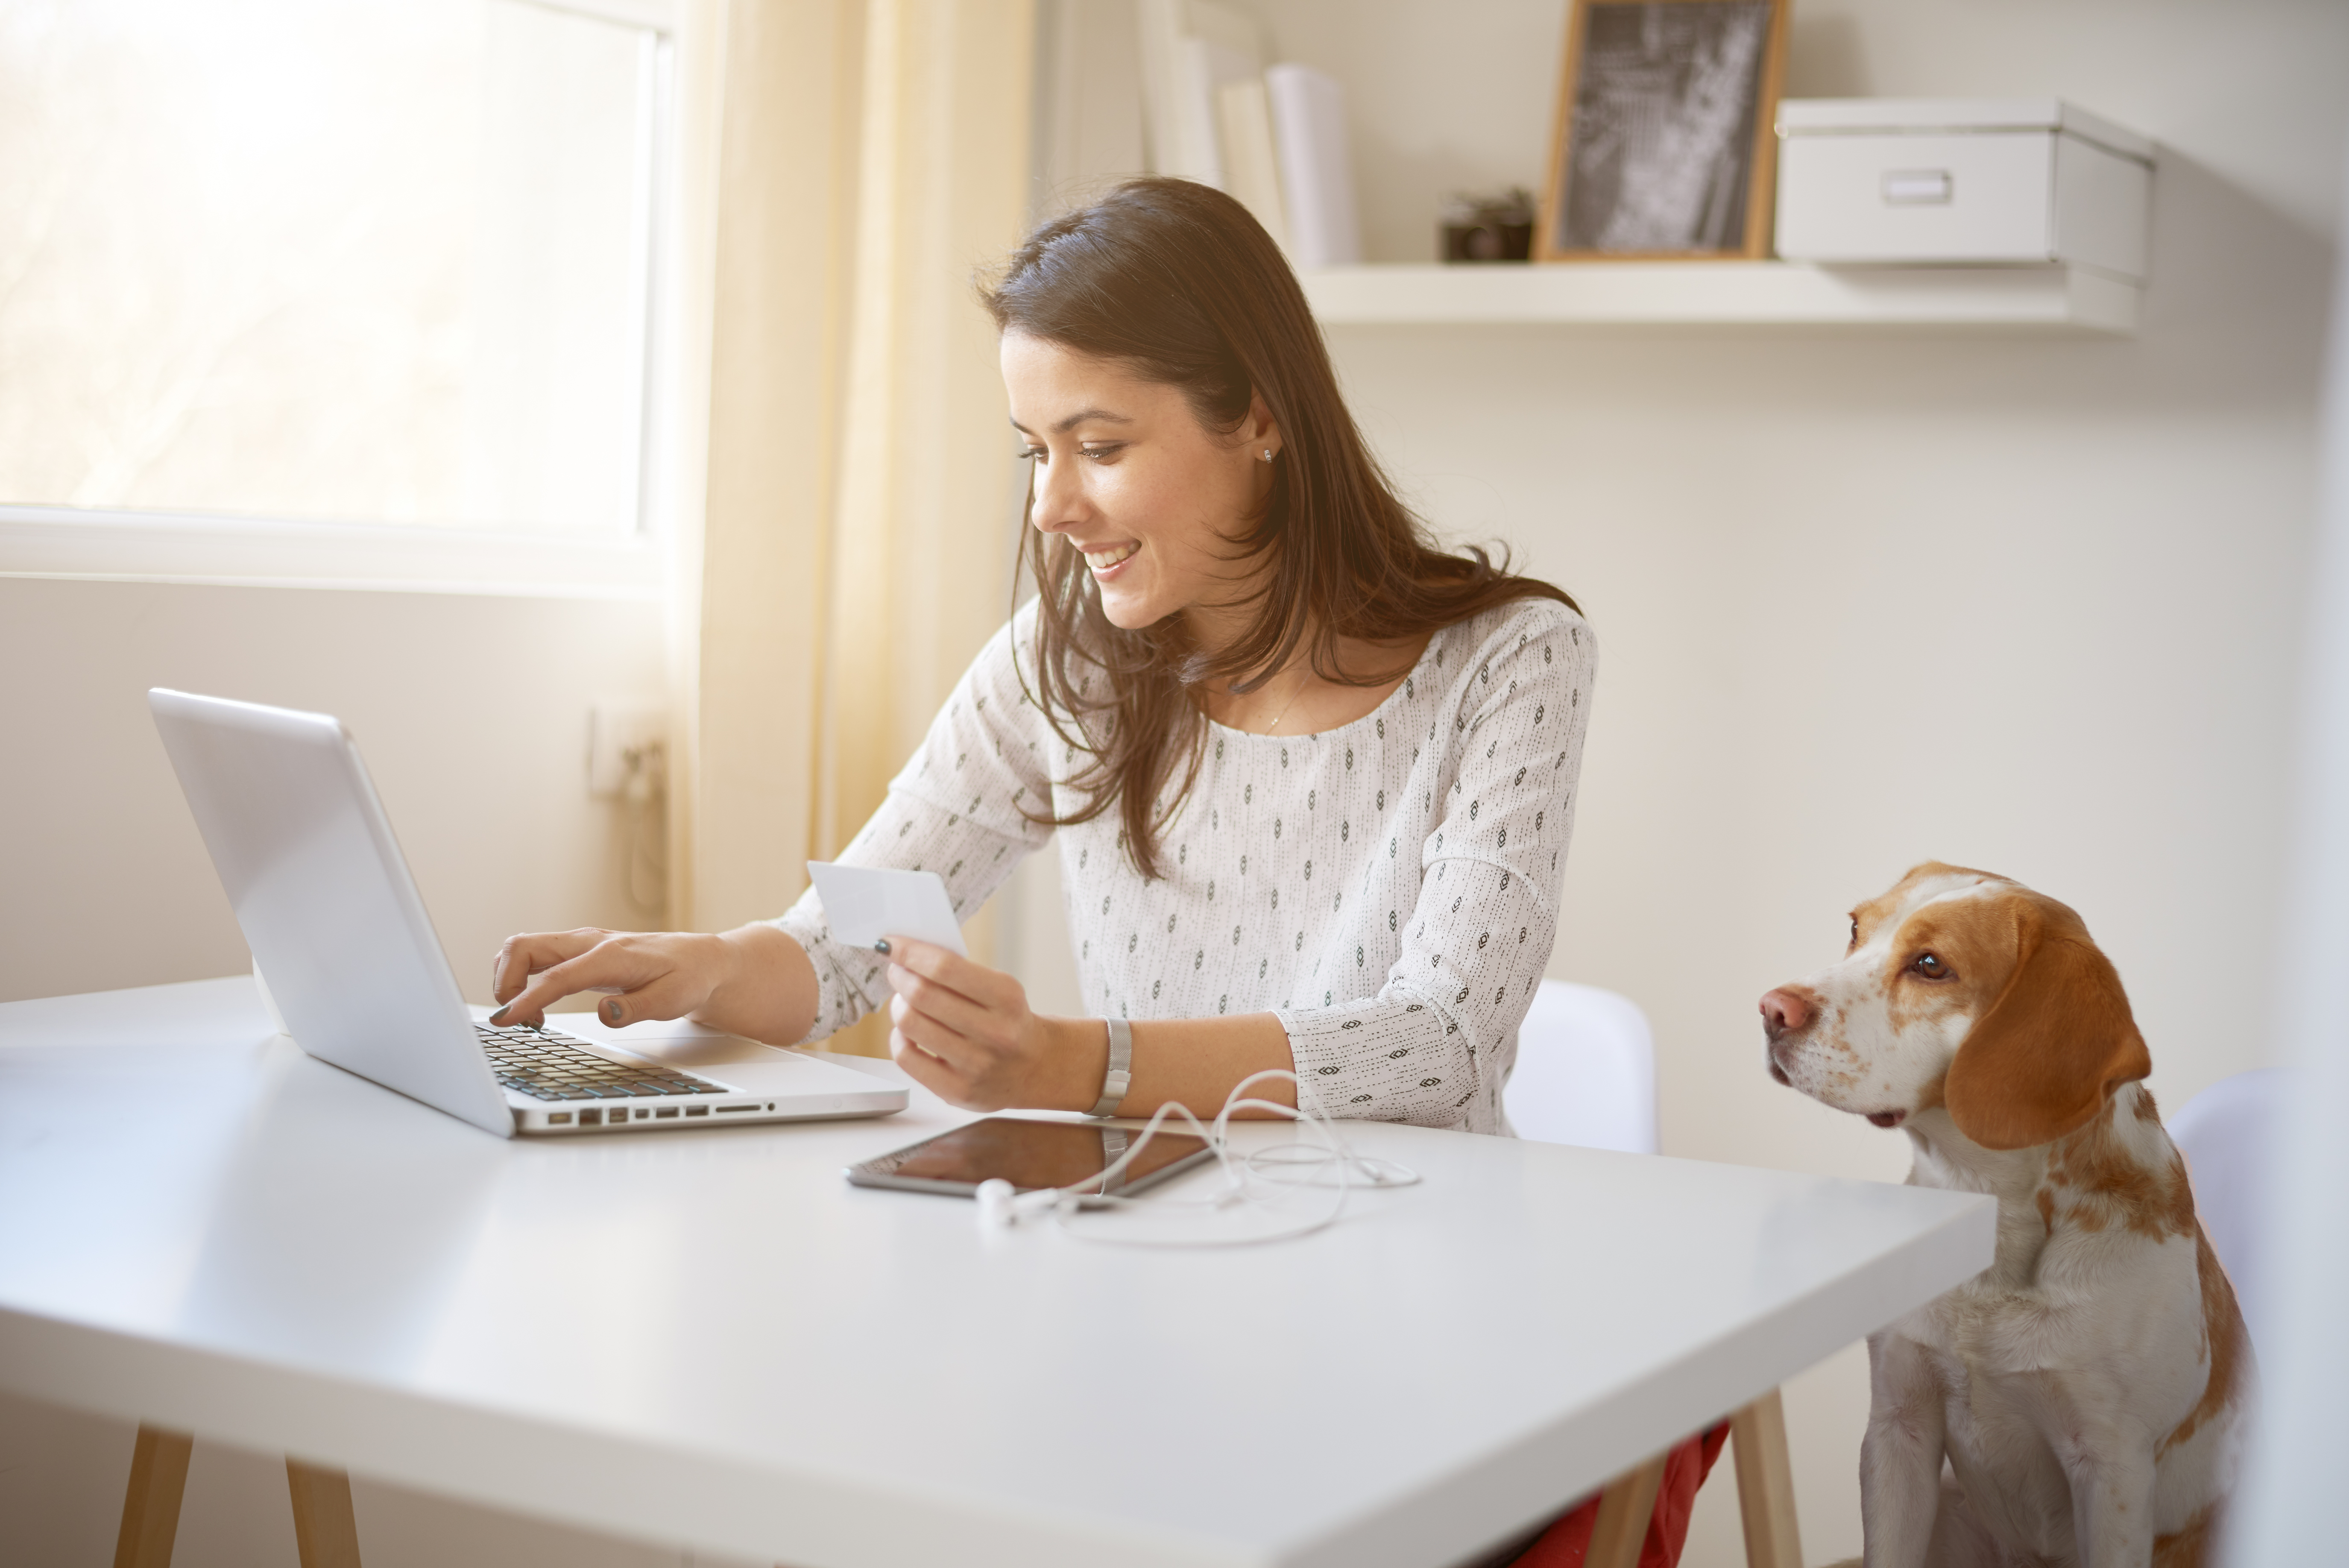 El trabajo en casa es una modalidad que se adapta a las necesidades de algunas personas. (Foto Prensa Libre: Shutterstock)